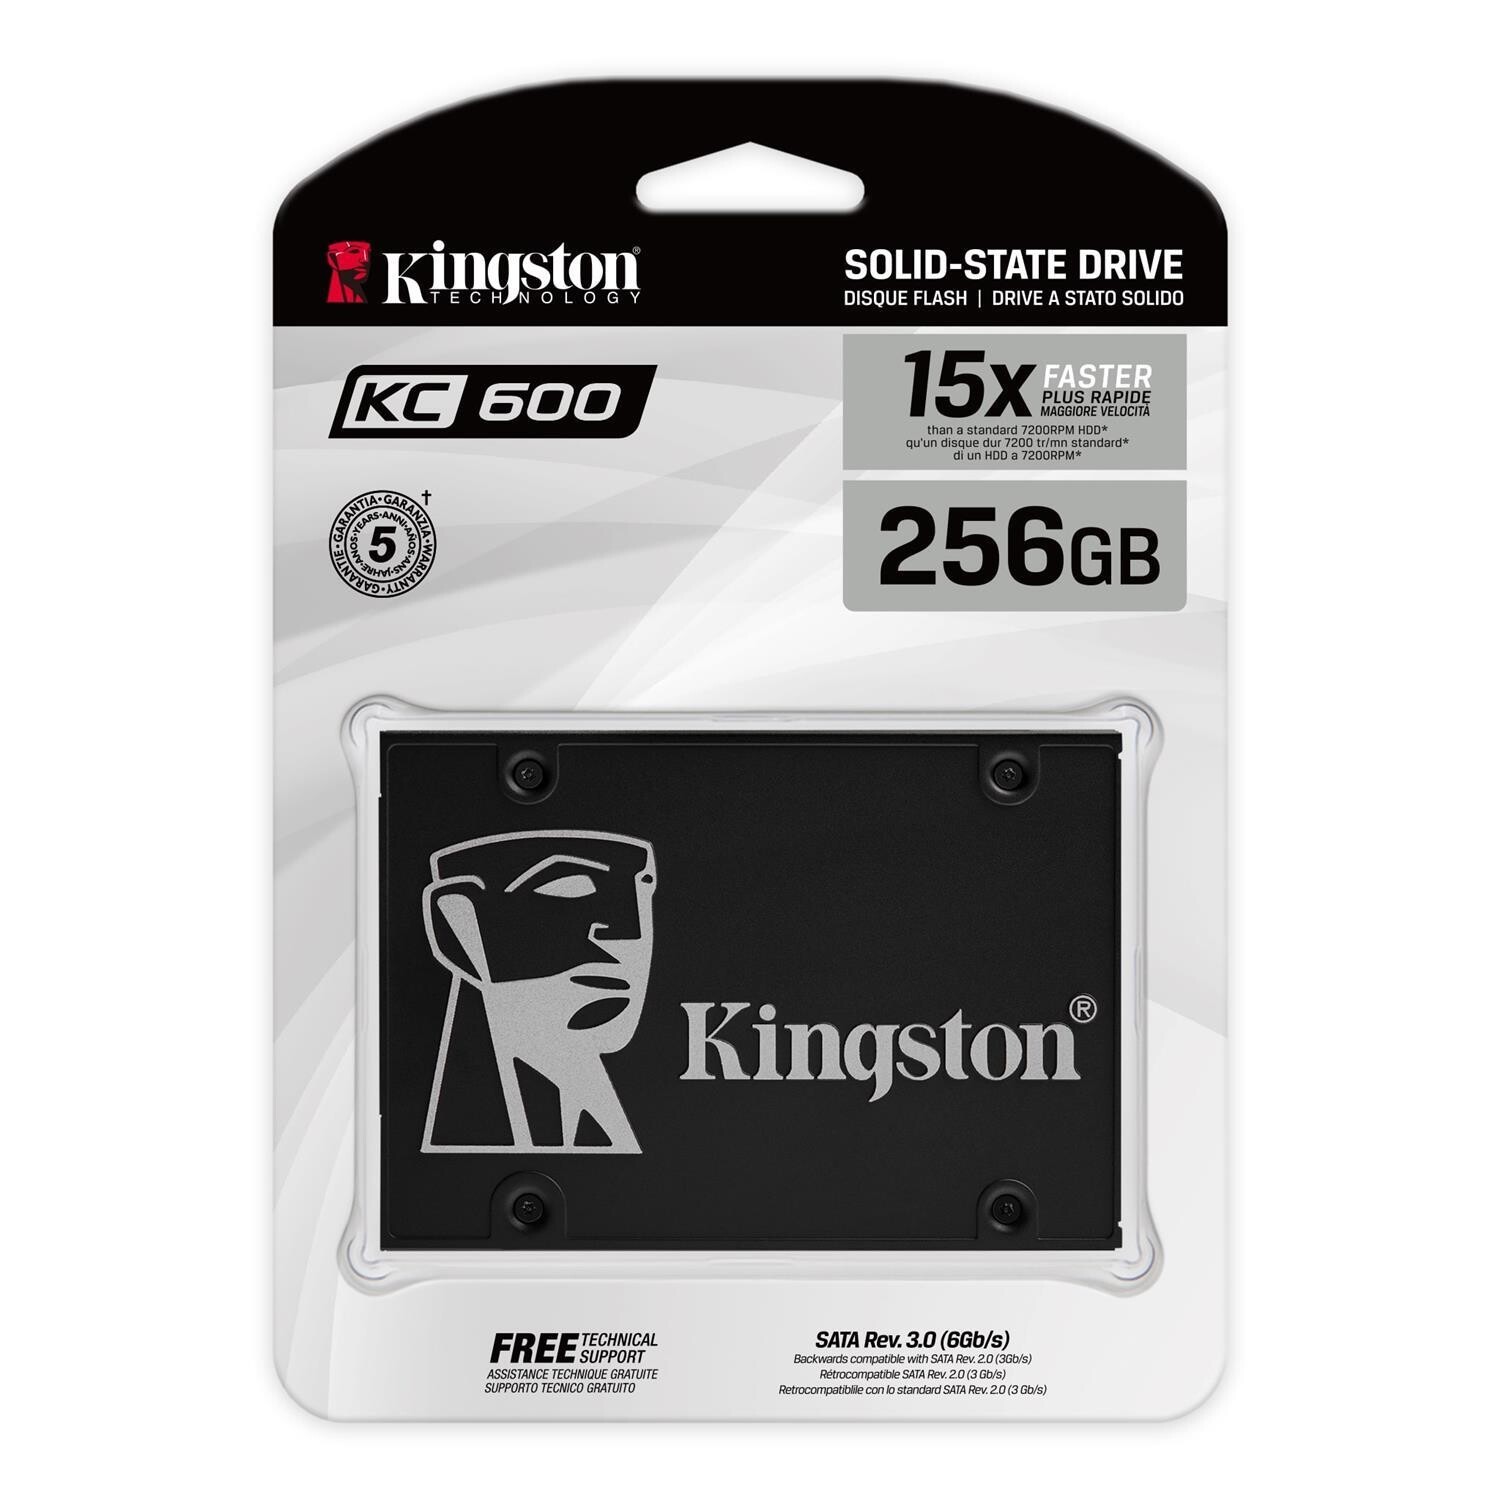 KINGSTON KC600 256GB SSD, 2.5” 7mm, SATA 6 Gb/s, Read/Write: 550 / 500 MB/s